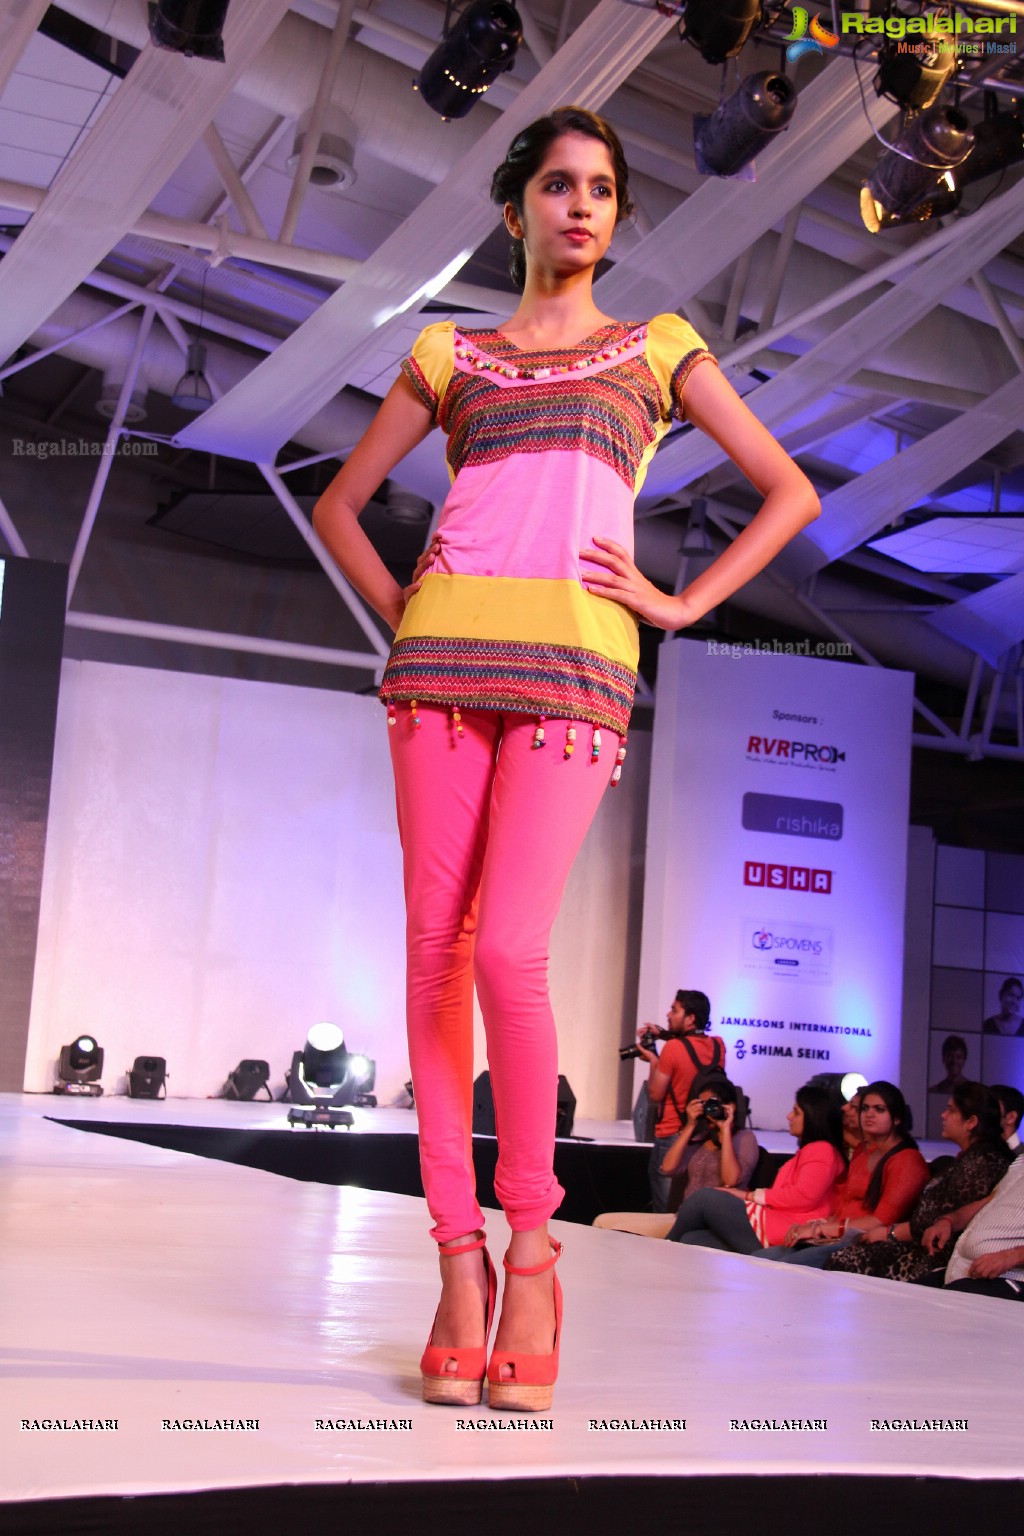 NIFT Fashionova and Knitmoda 2013, Hyderabad